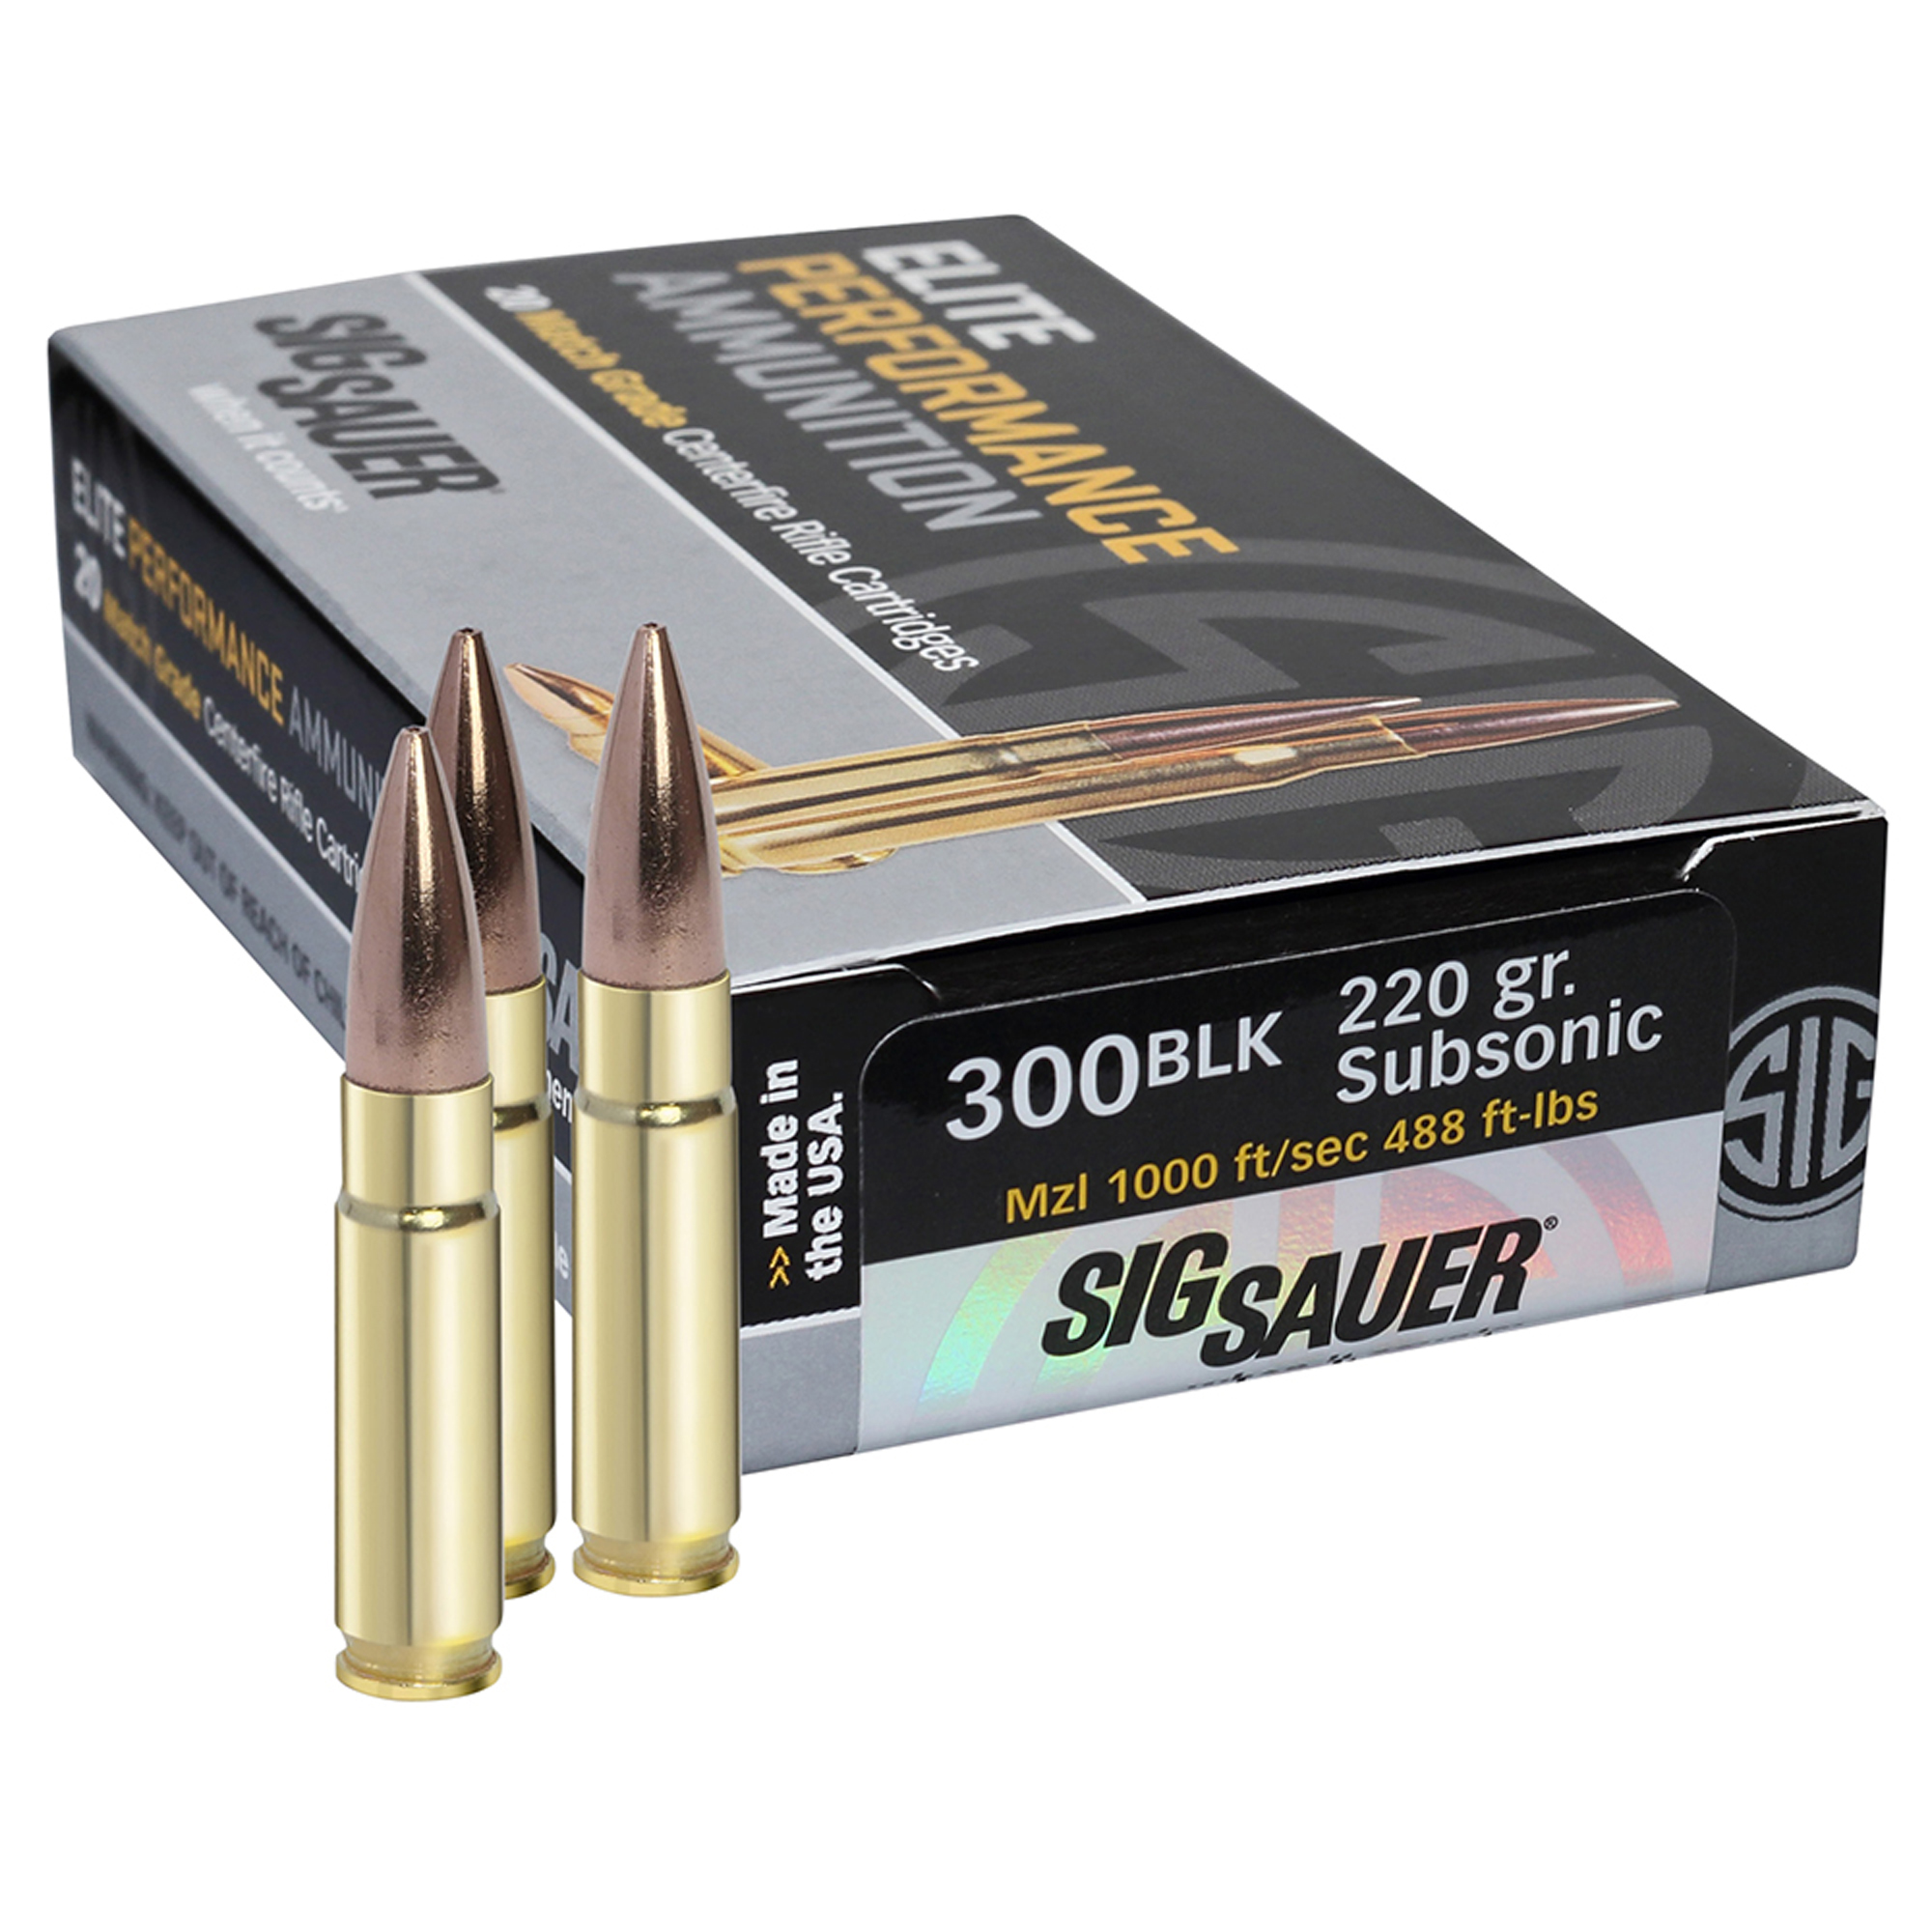 SIG SAUER Elite Match Grade .300 AAC Blackout 220 grain Open Tip Match Brass Cased Centerfire Rifle Ammunition | Free Shipping over $49!